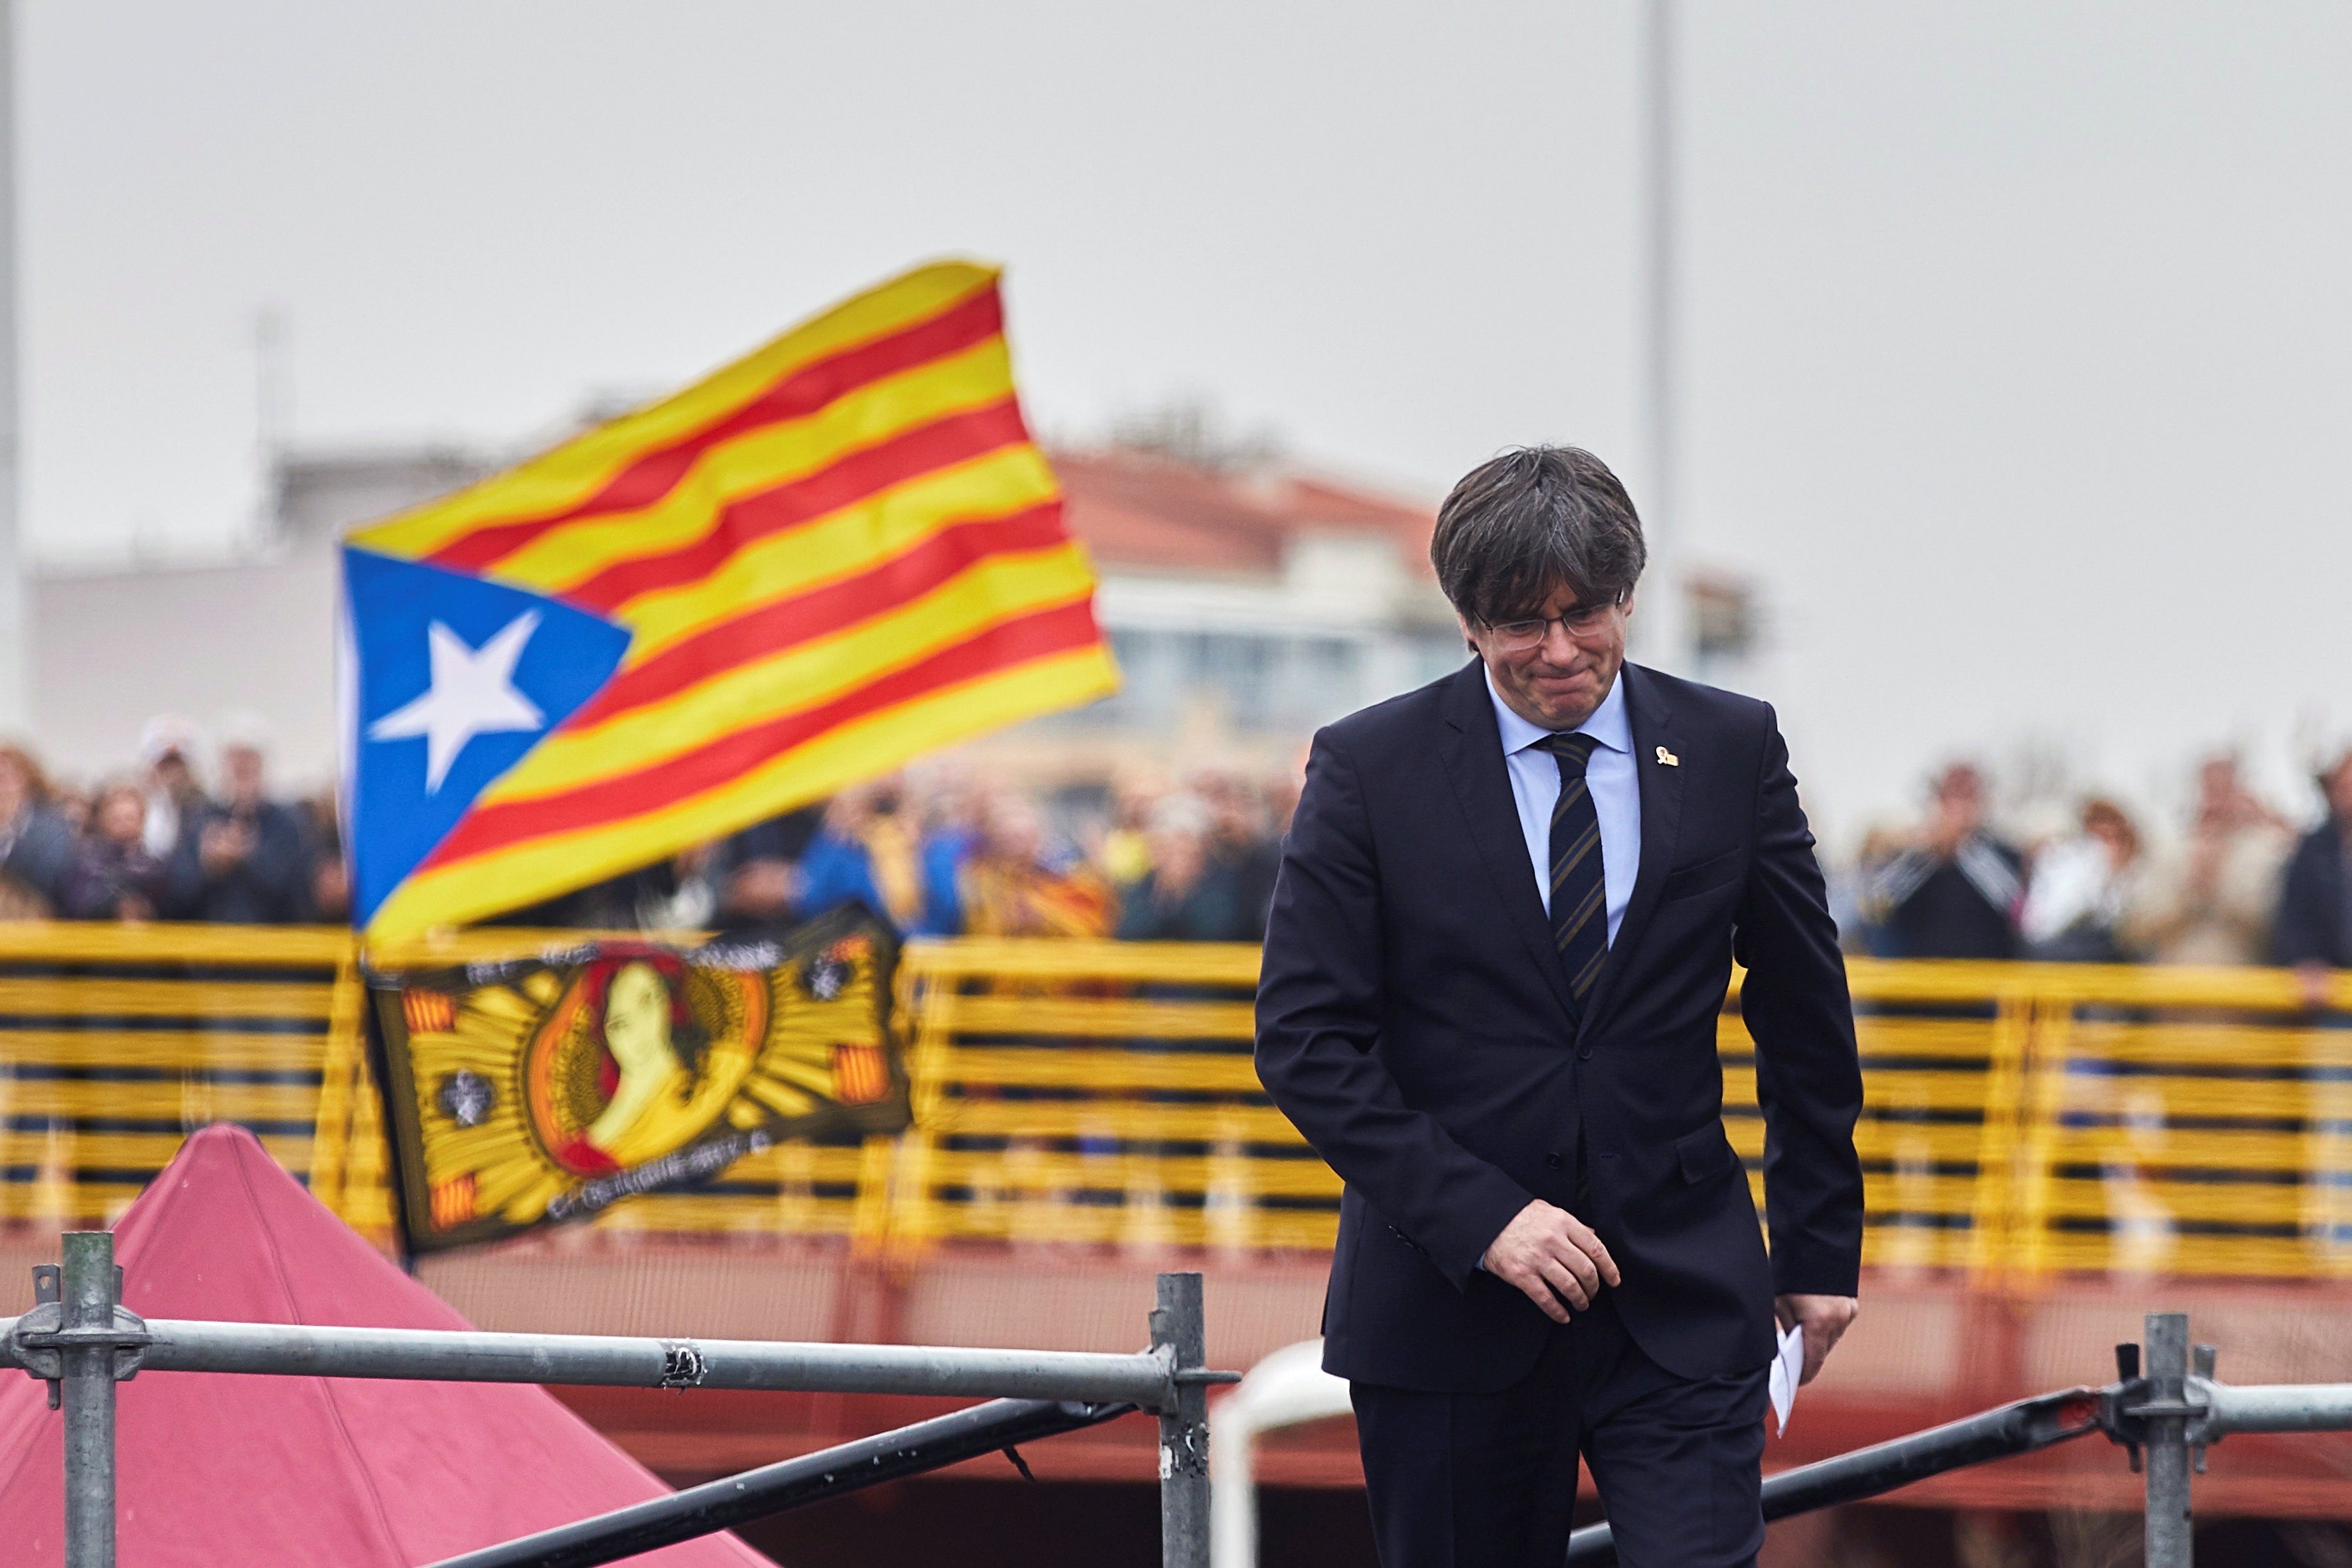 Alcaldes de la Catalunya Nord apoyan a Puigdemont: "Esto no puede aceptar"